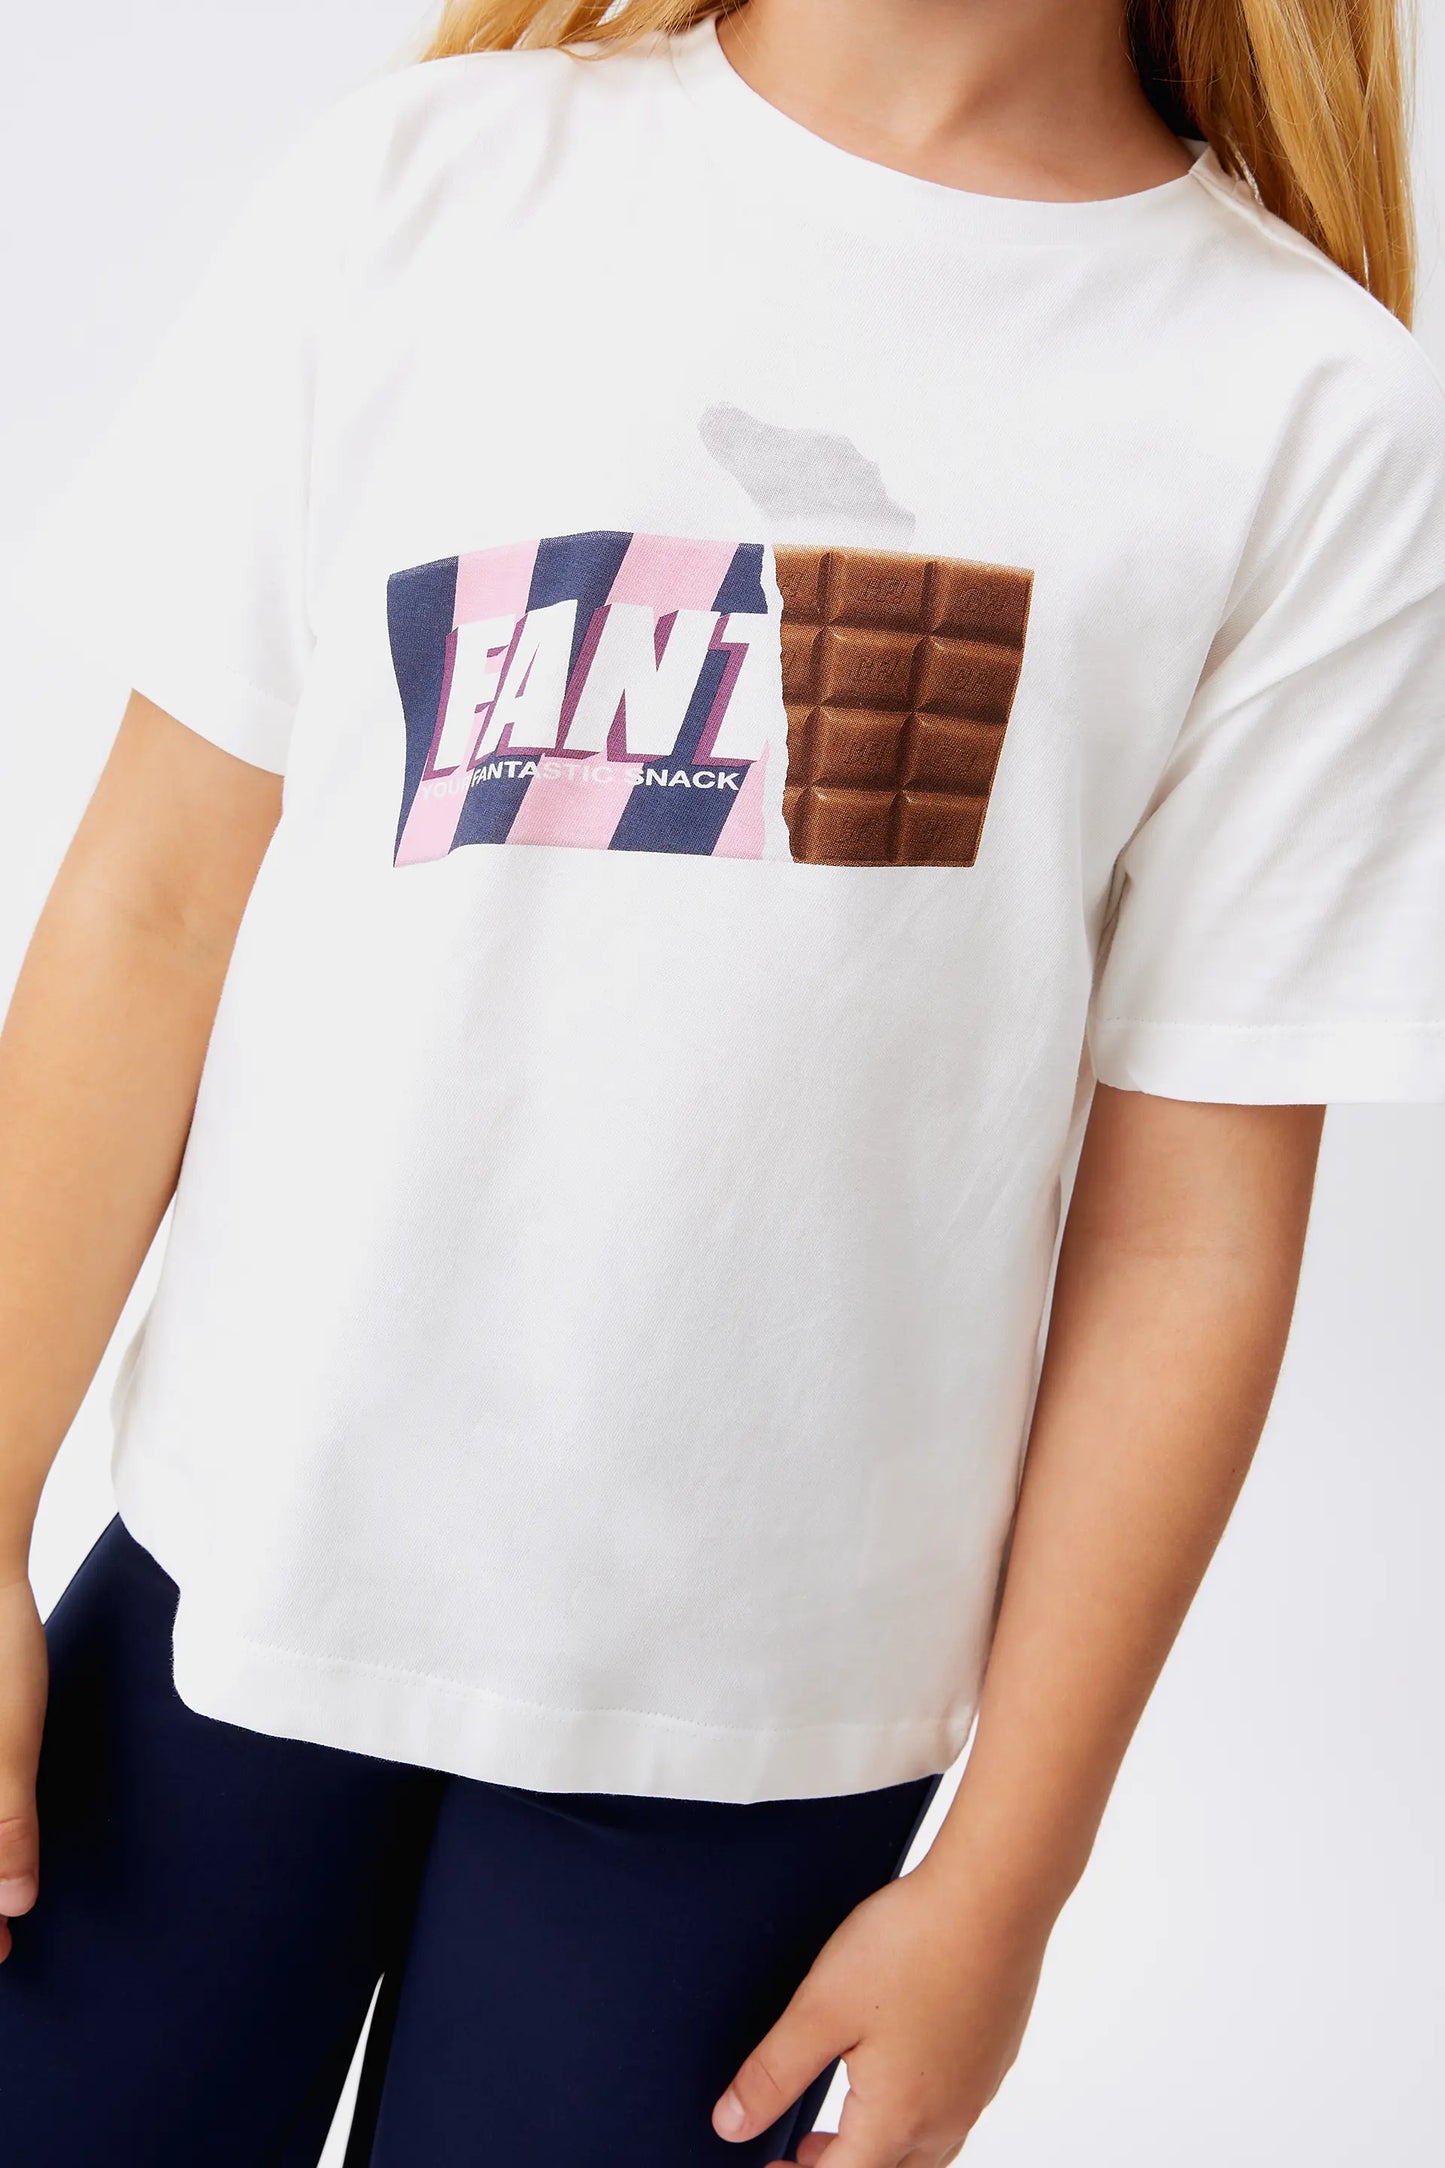 Camiseta unisex Chocolate blanca